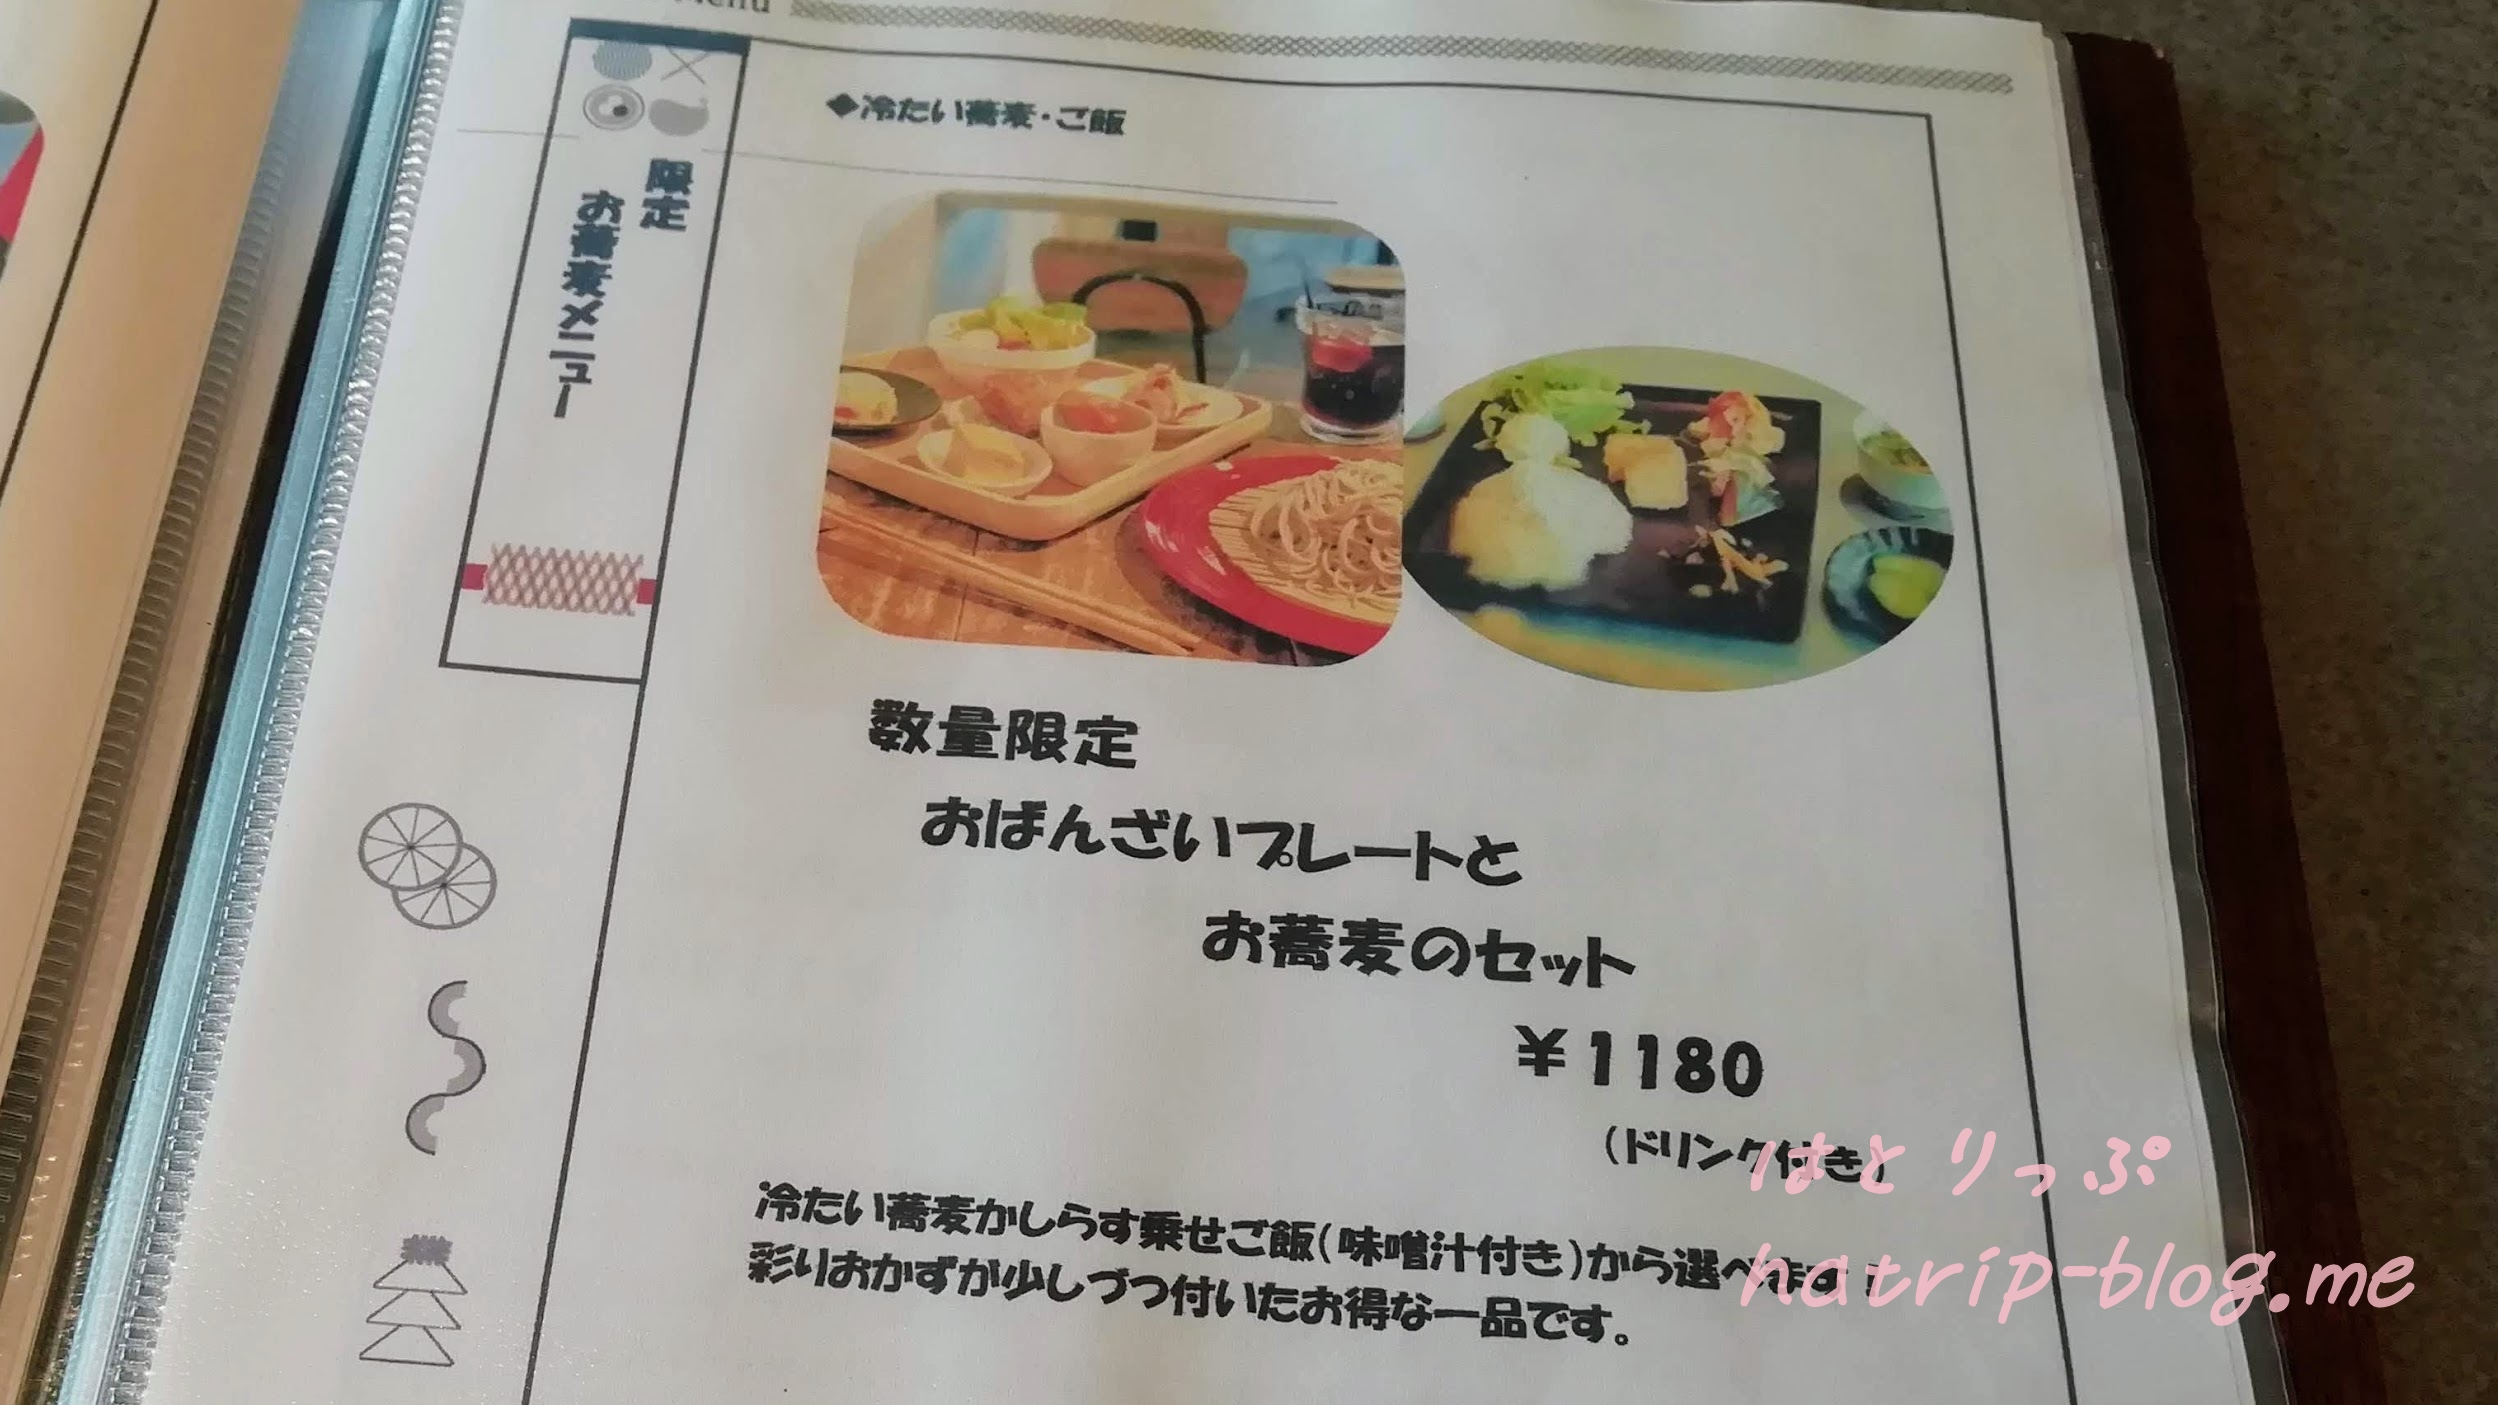 鎌倉 カフェレストラン 茶屋ひなた メニュー おばんざいプレートとお蕎麦のセット